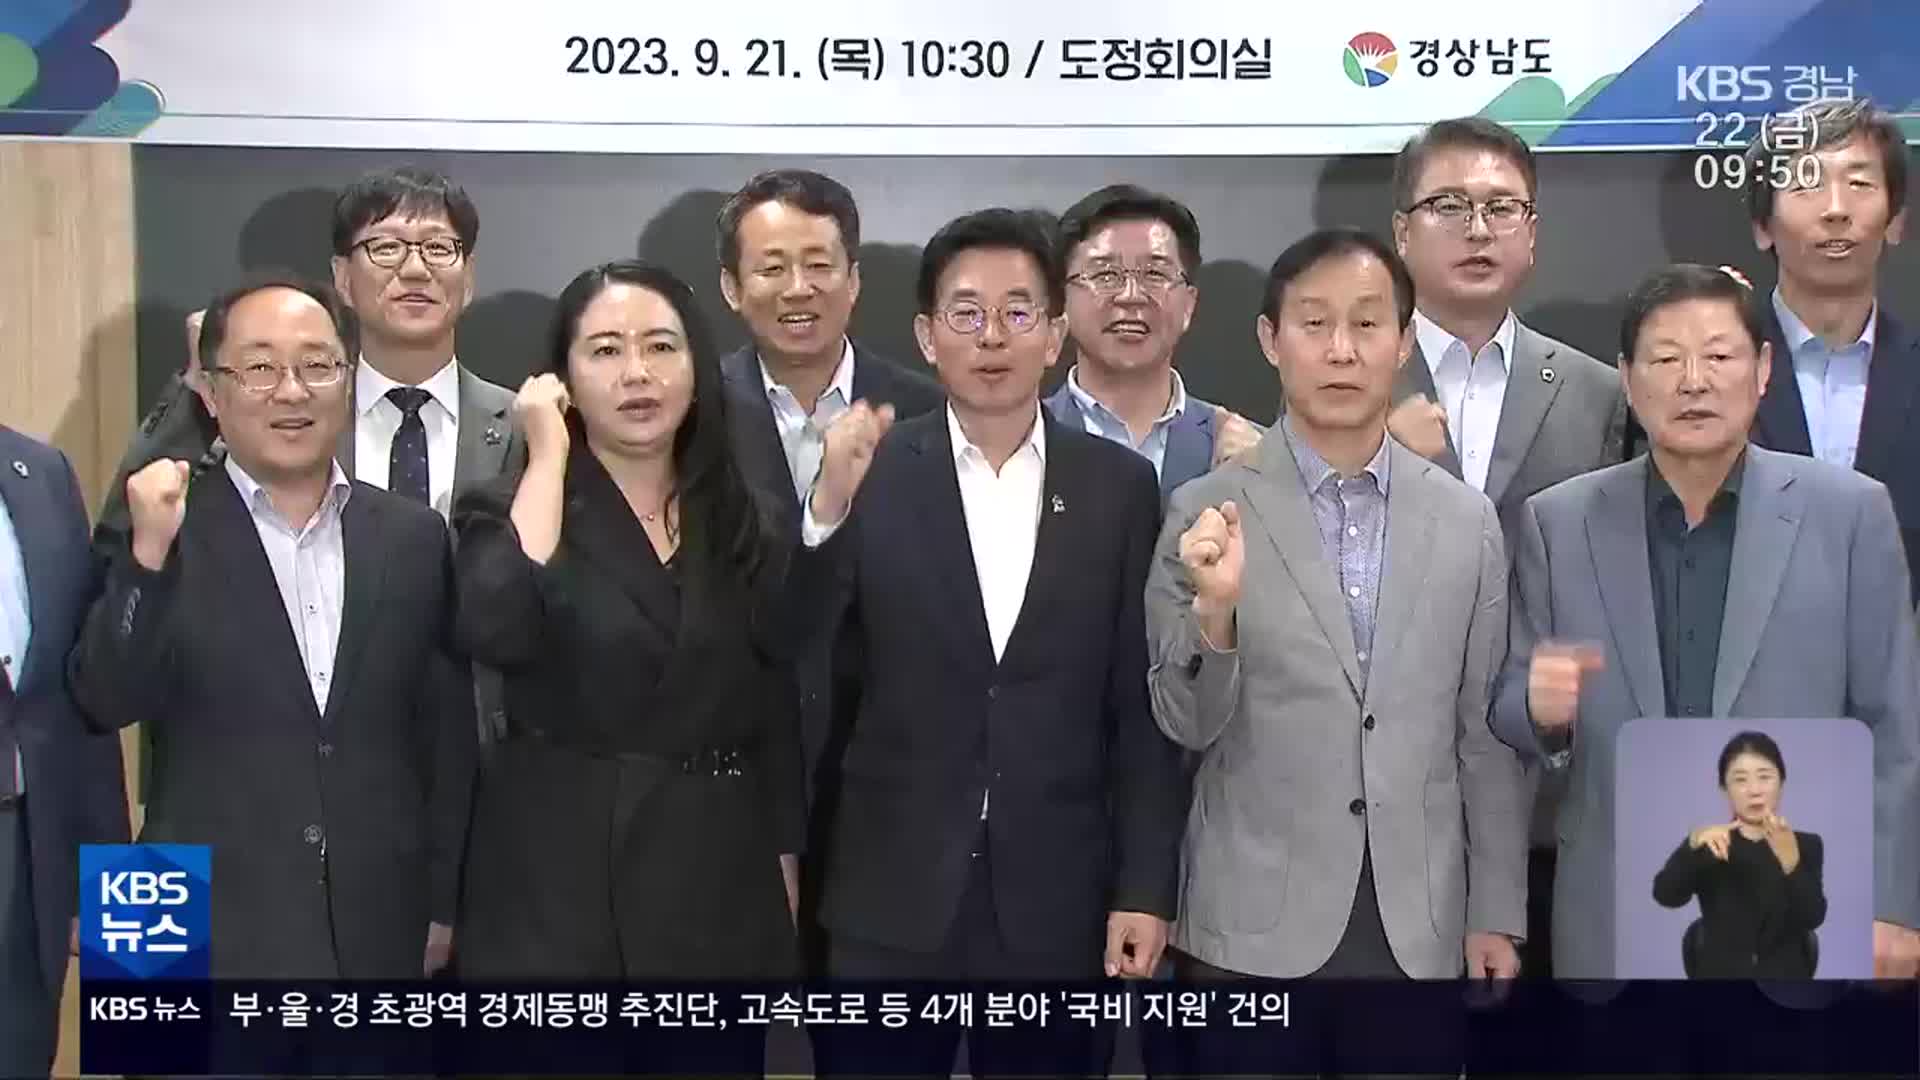 경남 지방시대위원회 출범…37조 원 사업 계획